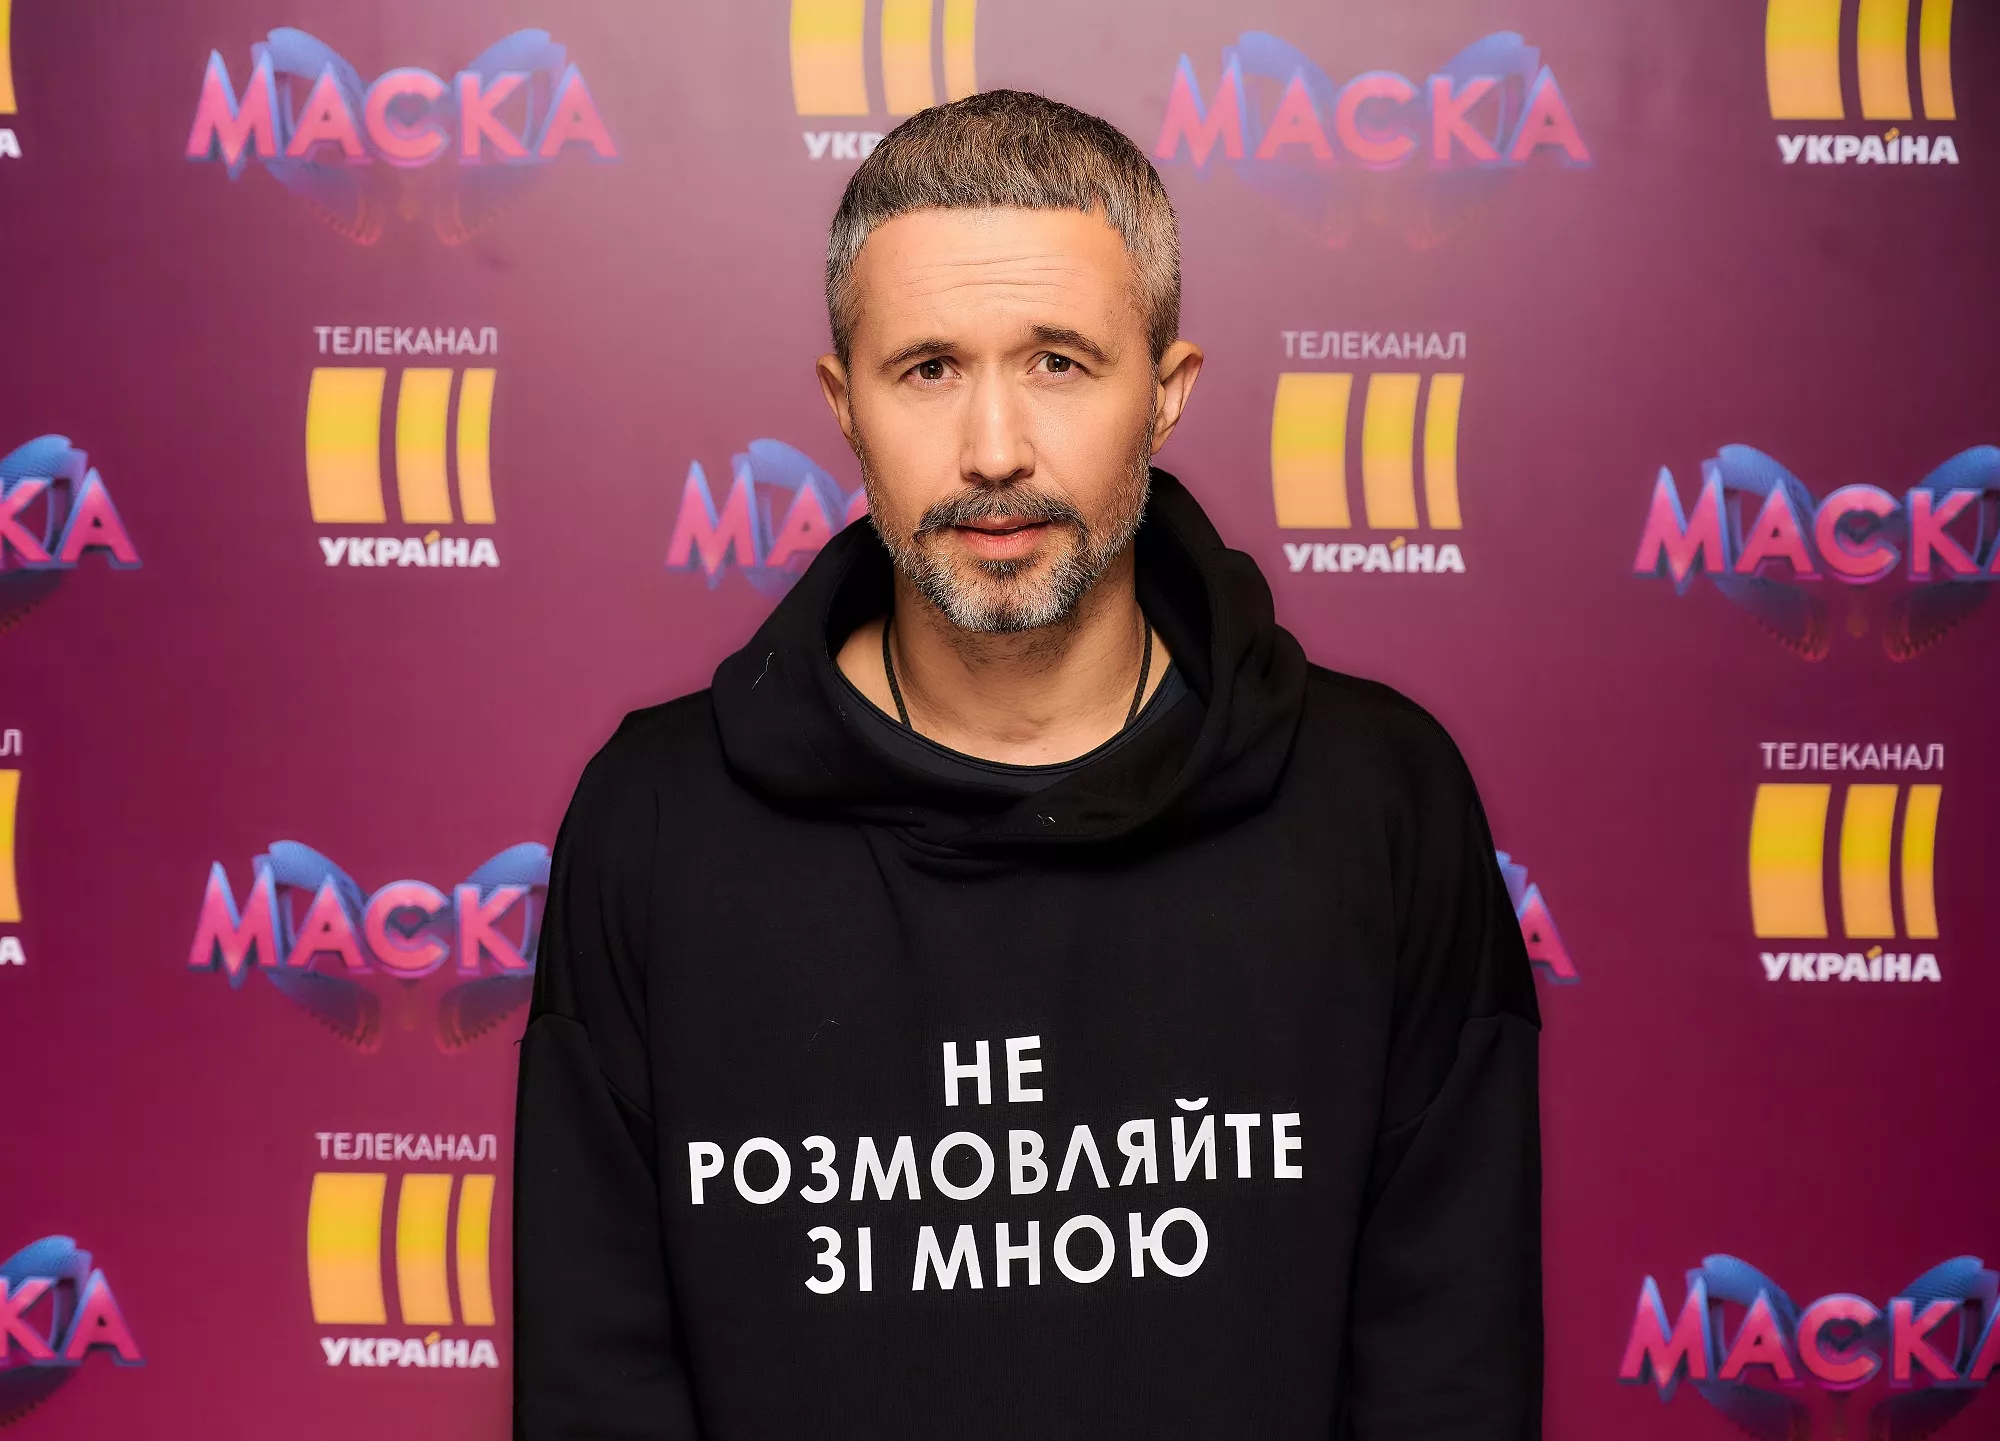 Сергей Бабкин в шоу "Маска"